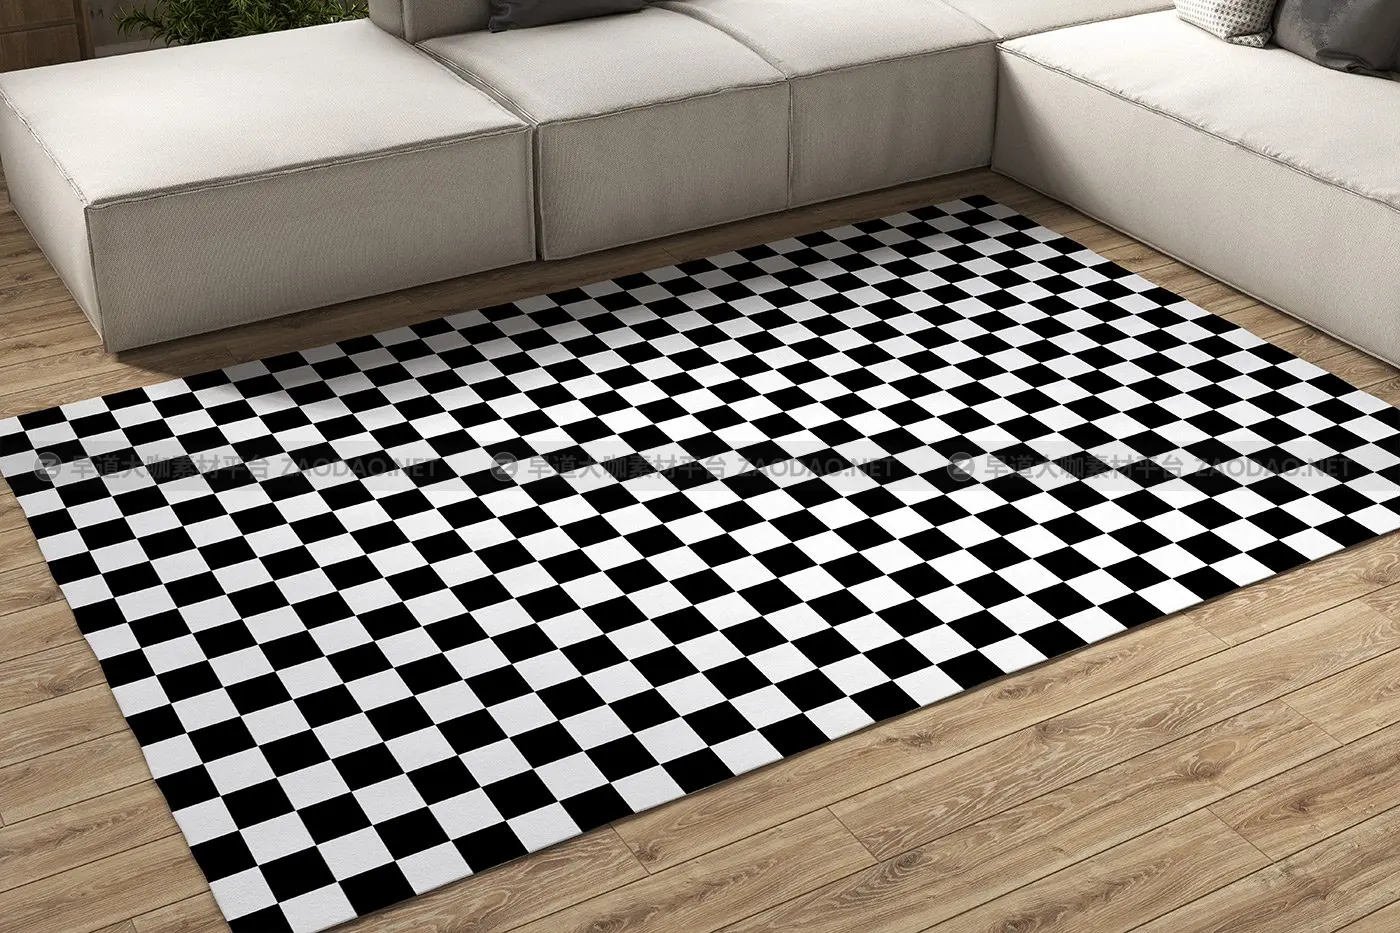 室内地毯印花设计展示样机模板 Carpet Loft Interior Mockup Set 01插图1